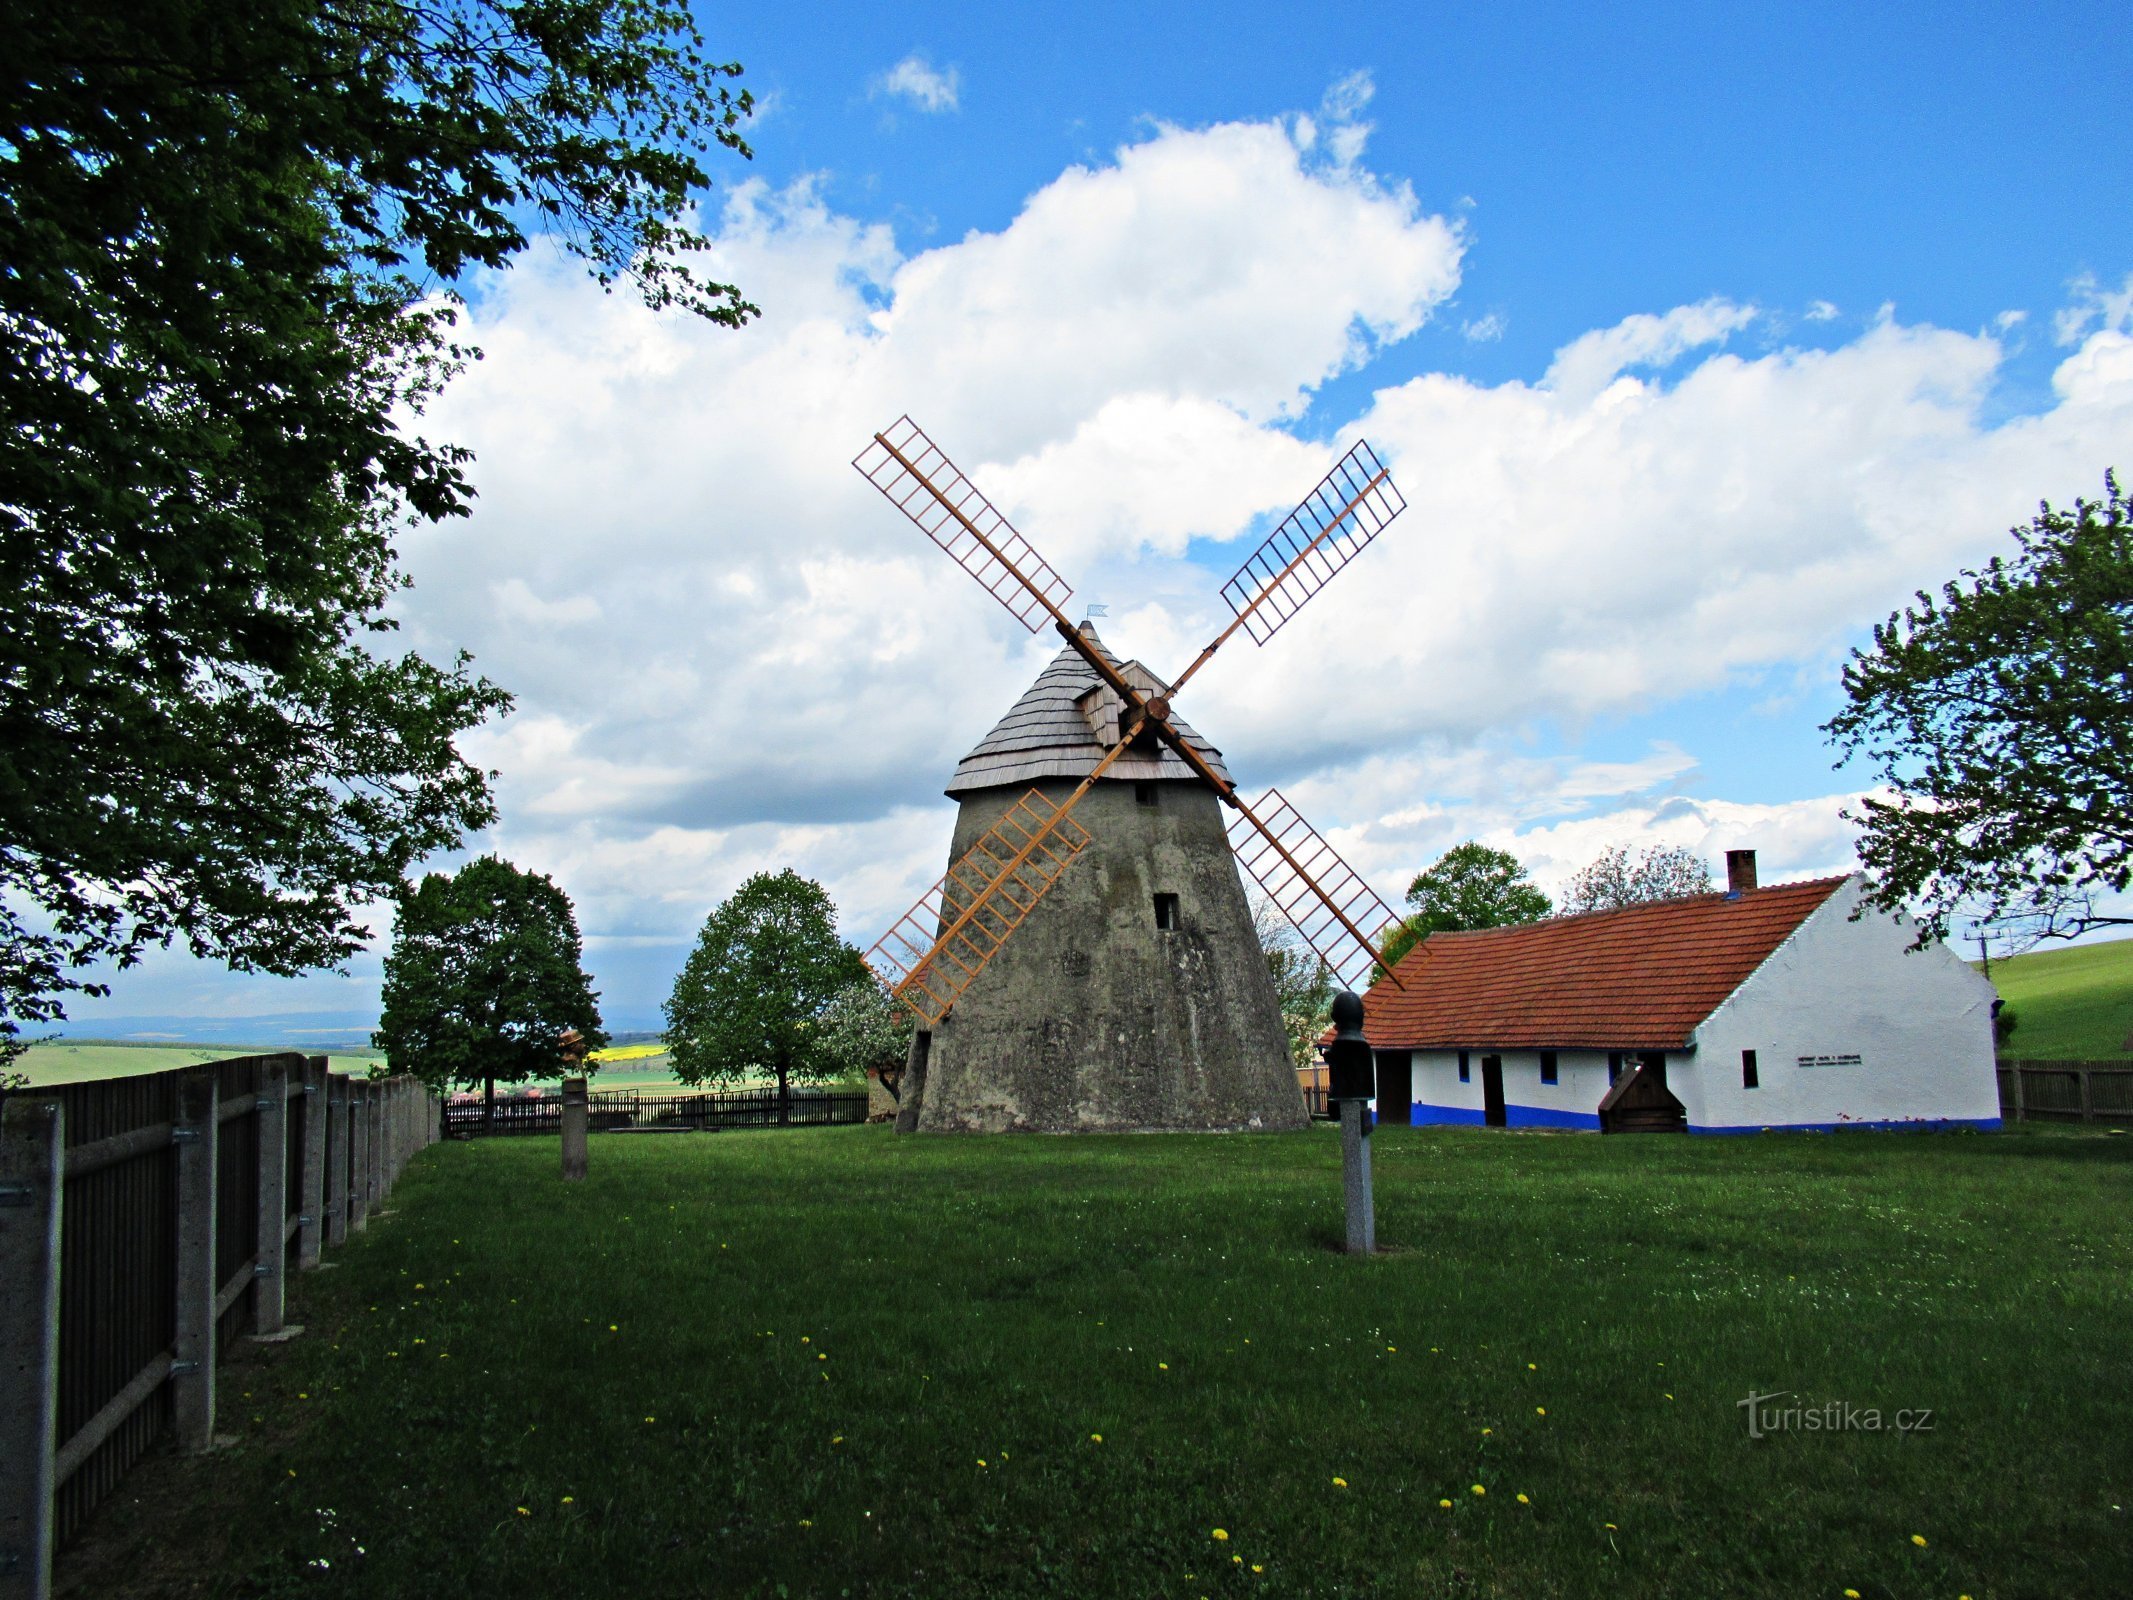 Areál větrného mlýna nad obcí Kuželov na Slovácku